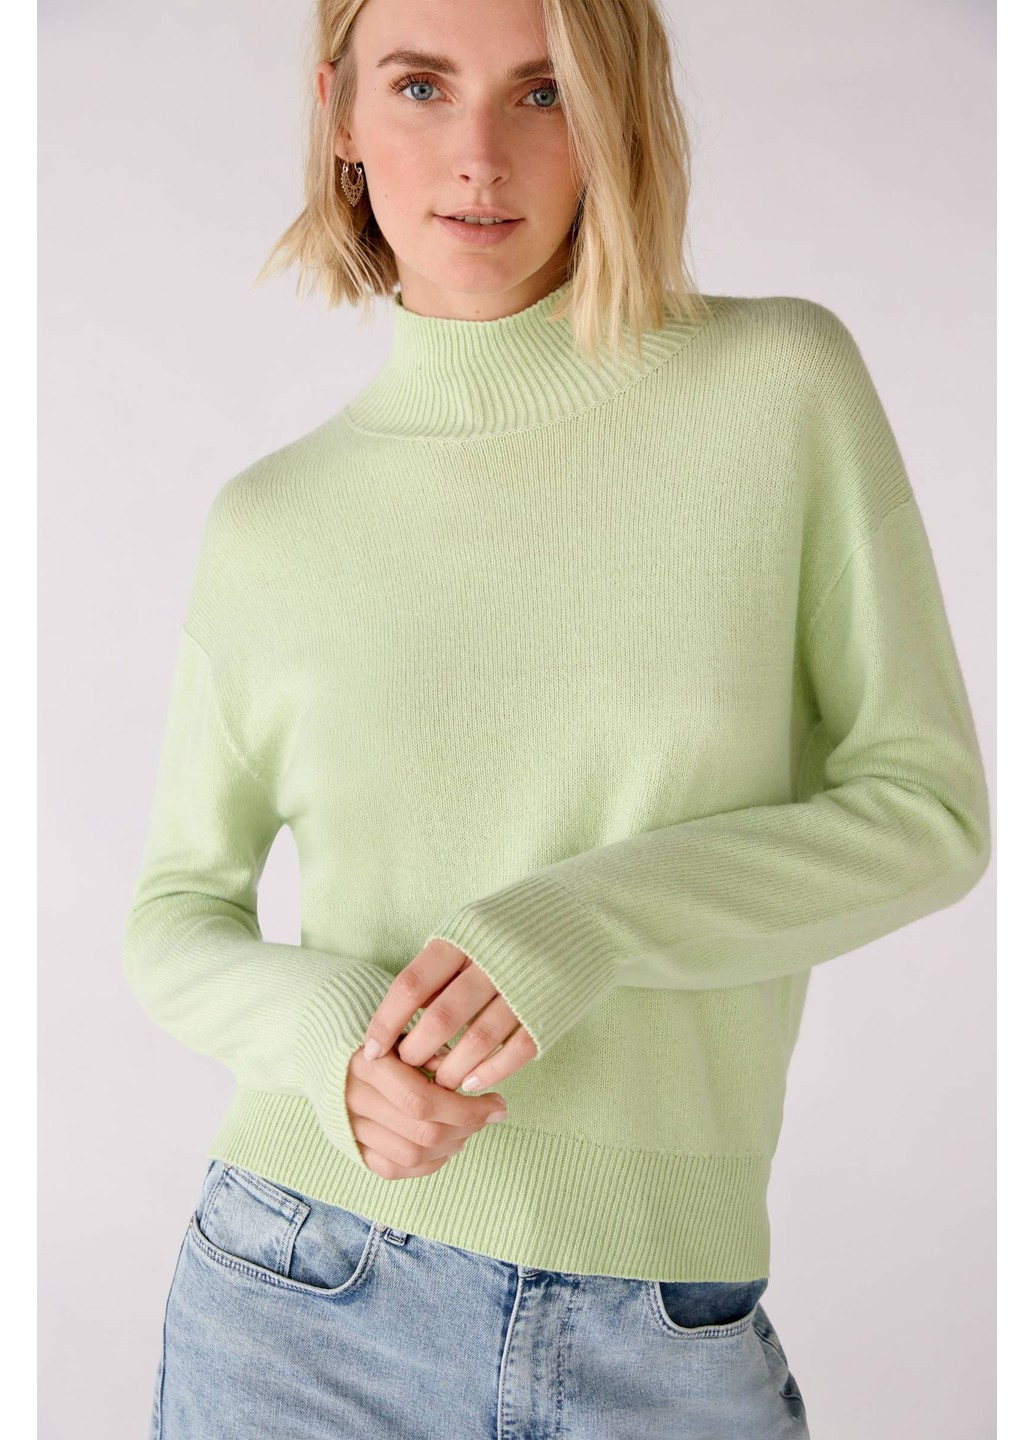 Салатовый демисезонный женский свитер салатовый джемпер Oui